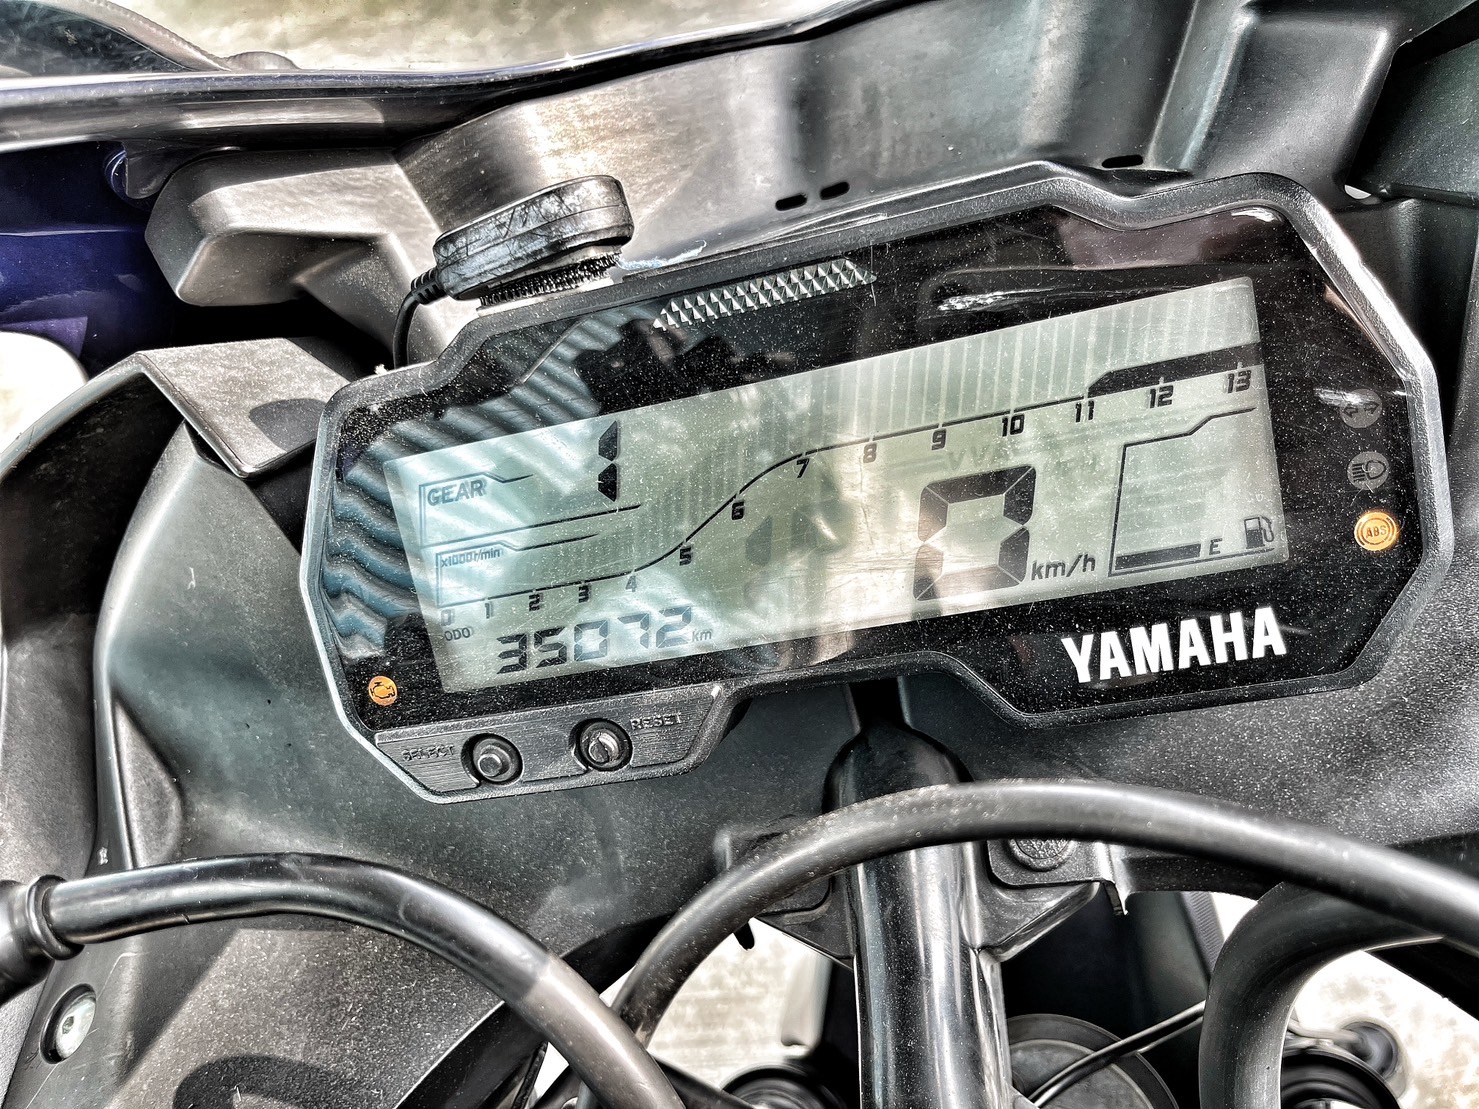 YAMAHA YZF-R15 - 中古/二手車出售中 ABS版 手機架 行車記錄器 強化齒盤 鏈條 小資族二手重機買賣 | 小資族二手重機買賣